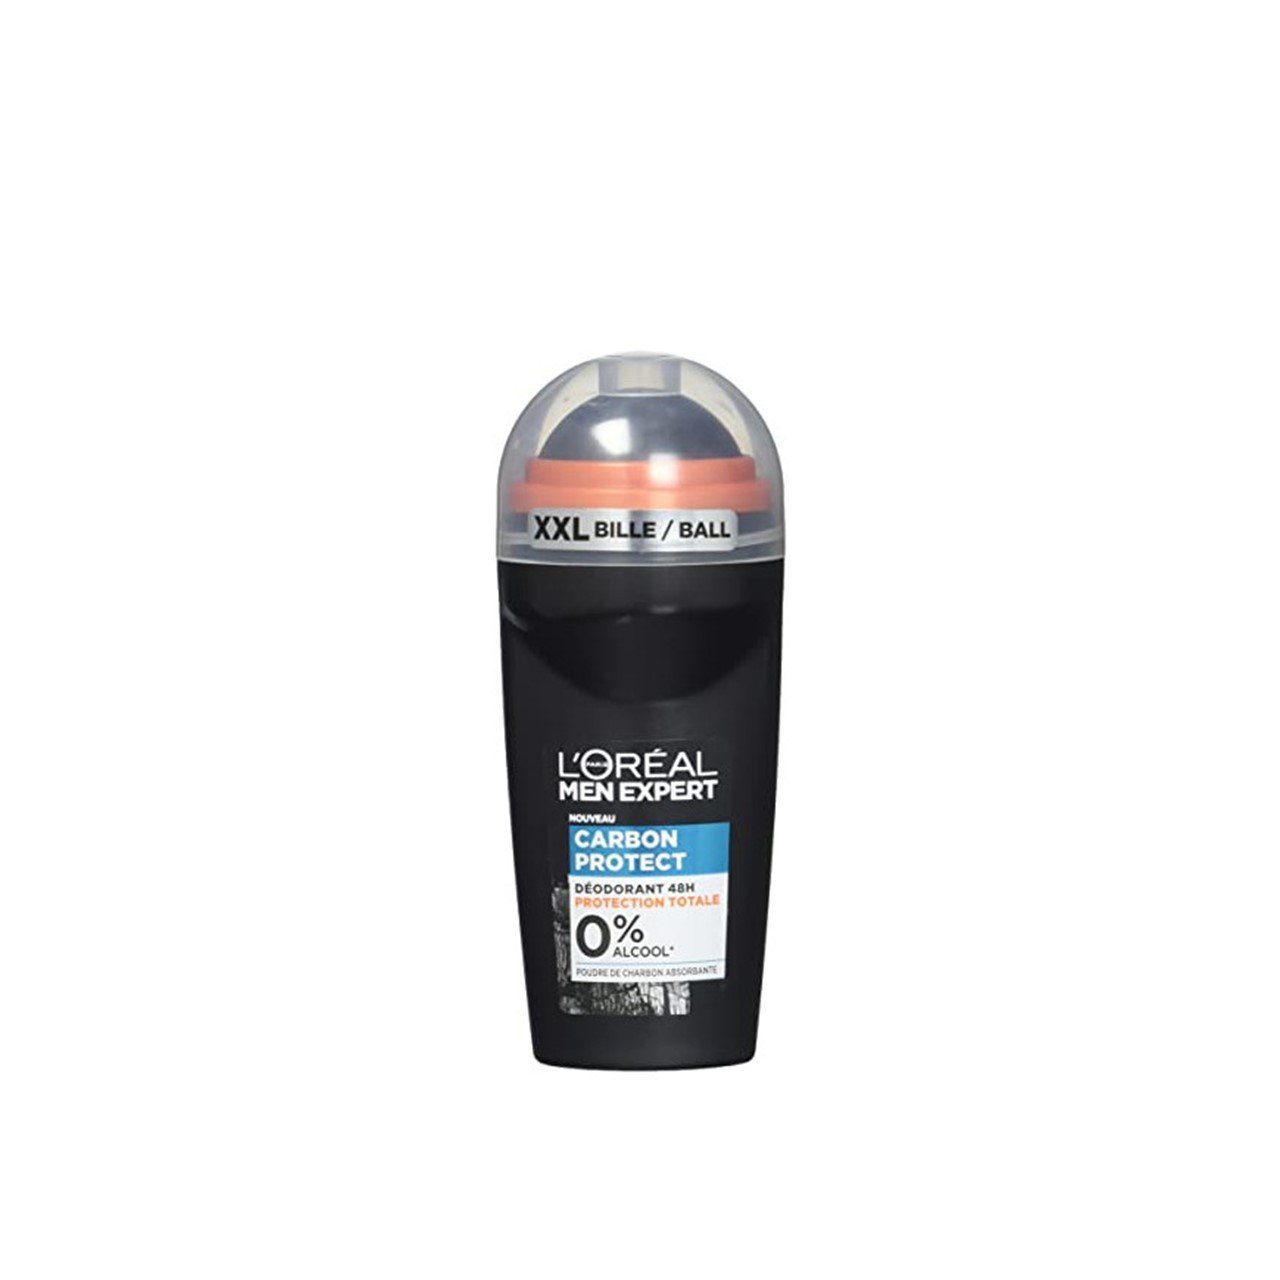 L'Oréal Paris Men Expert Carbon Protect 48h Deodorant Roll-On 50ml